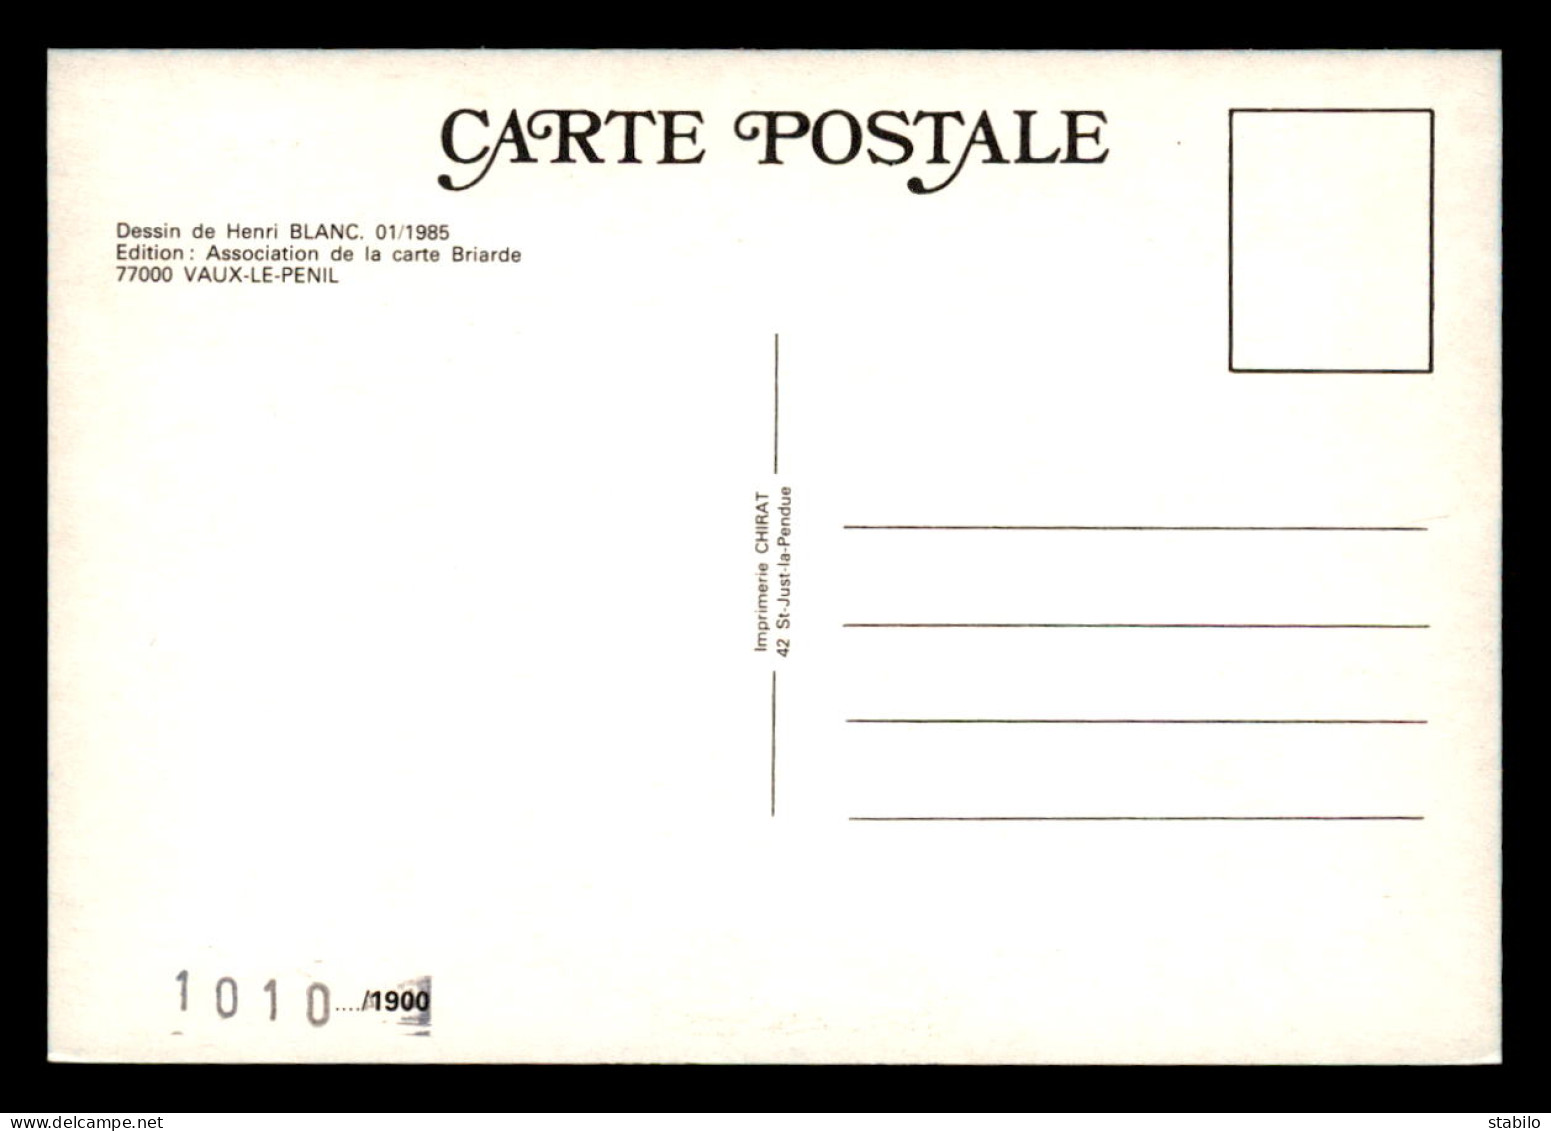 ASSOCIATION DE LA CARTE POSTALE BRIARDE - DESSIN DE HENRI BLANC JANVIER 1985 - CARTE NUMEROTEE - Borse E Saloni Del Collezionismo